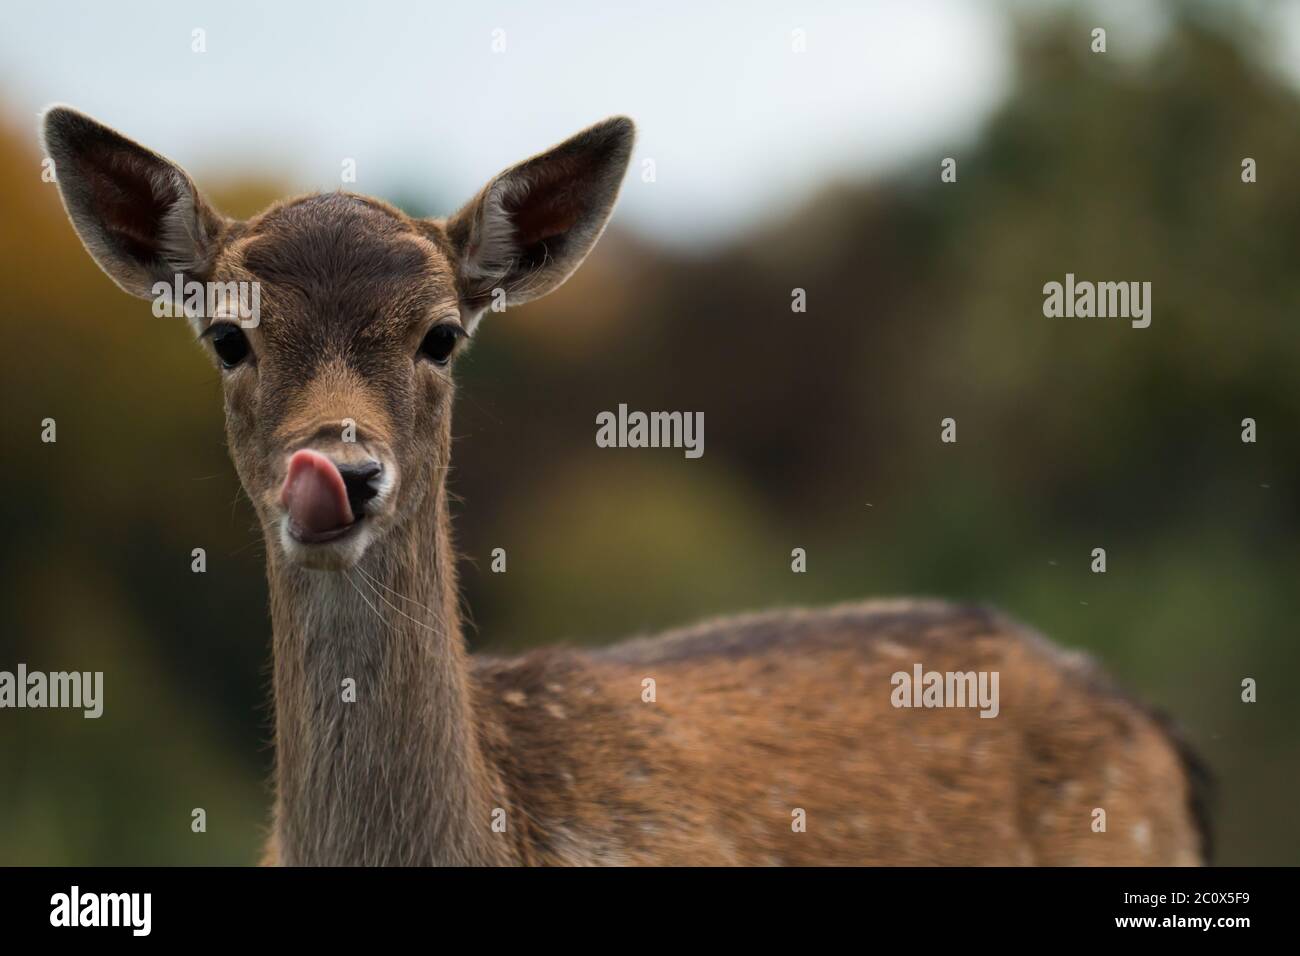 Retrato de un joven ciervo barbecho (Dama dama) lamiendo la nariz Foto de stock